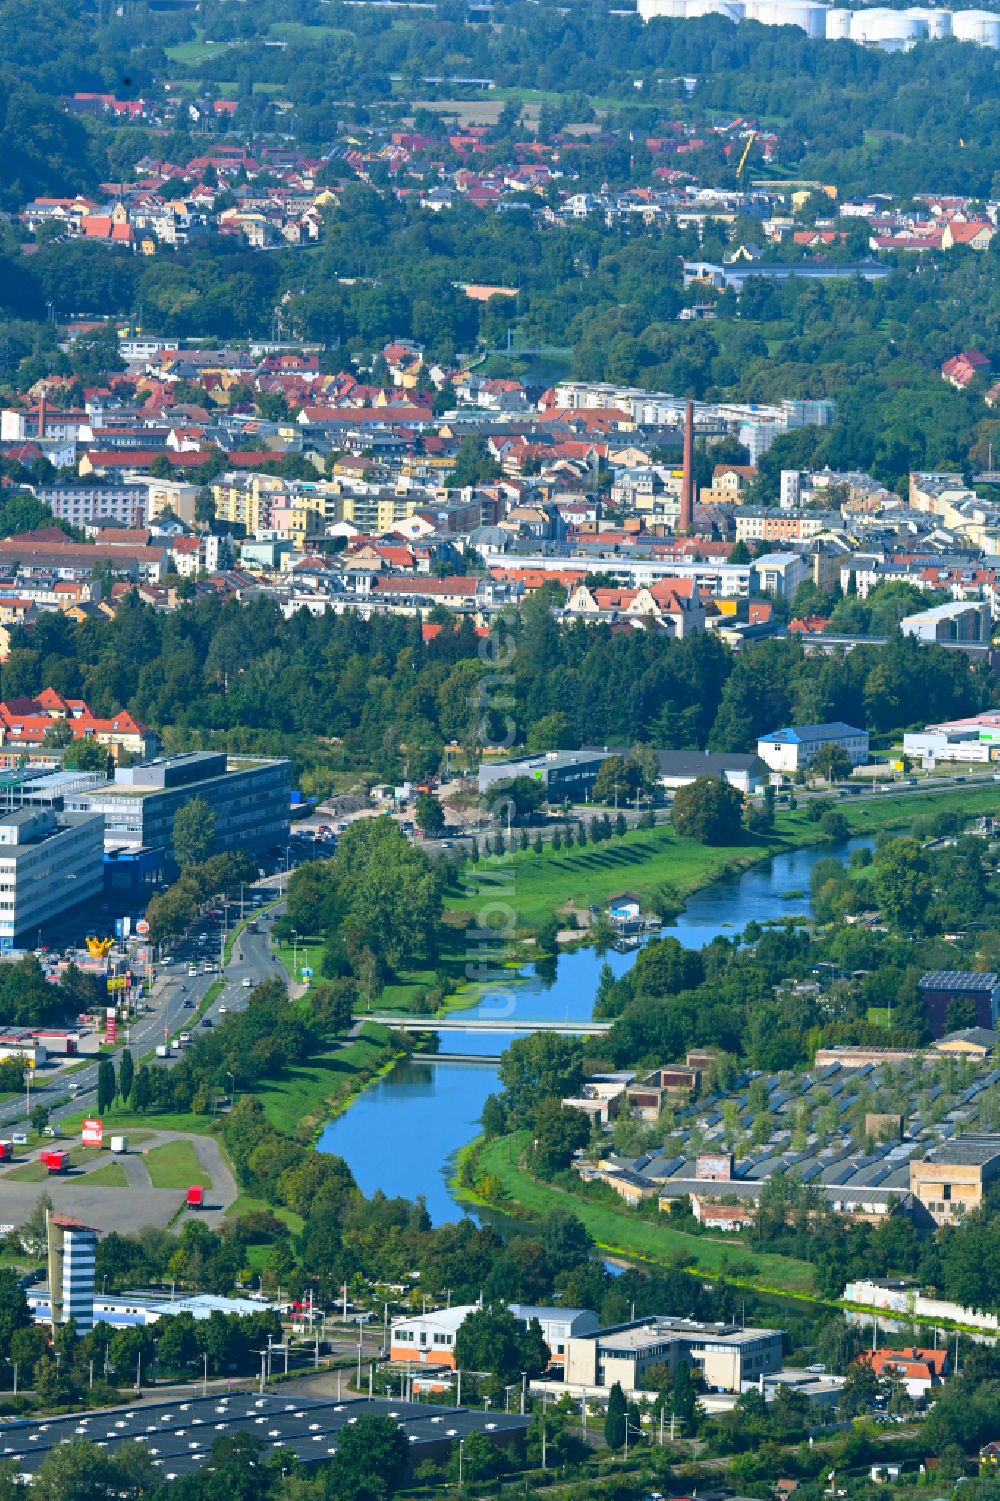 Luftbild Gera - Stadtzentrum im Innenstadtbereich am Ufer des Flußverlaufes Weiße Elster in Gera im Bundesland Thüringen, Deutschland